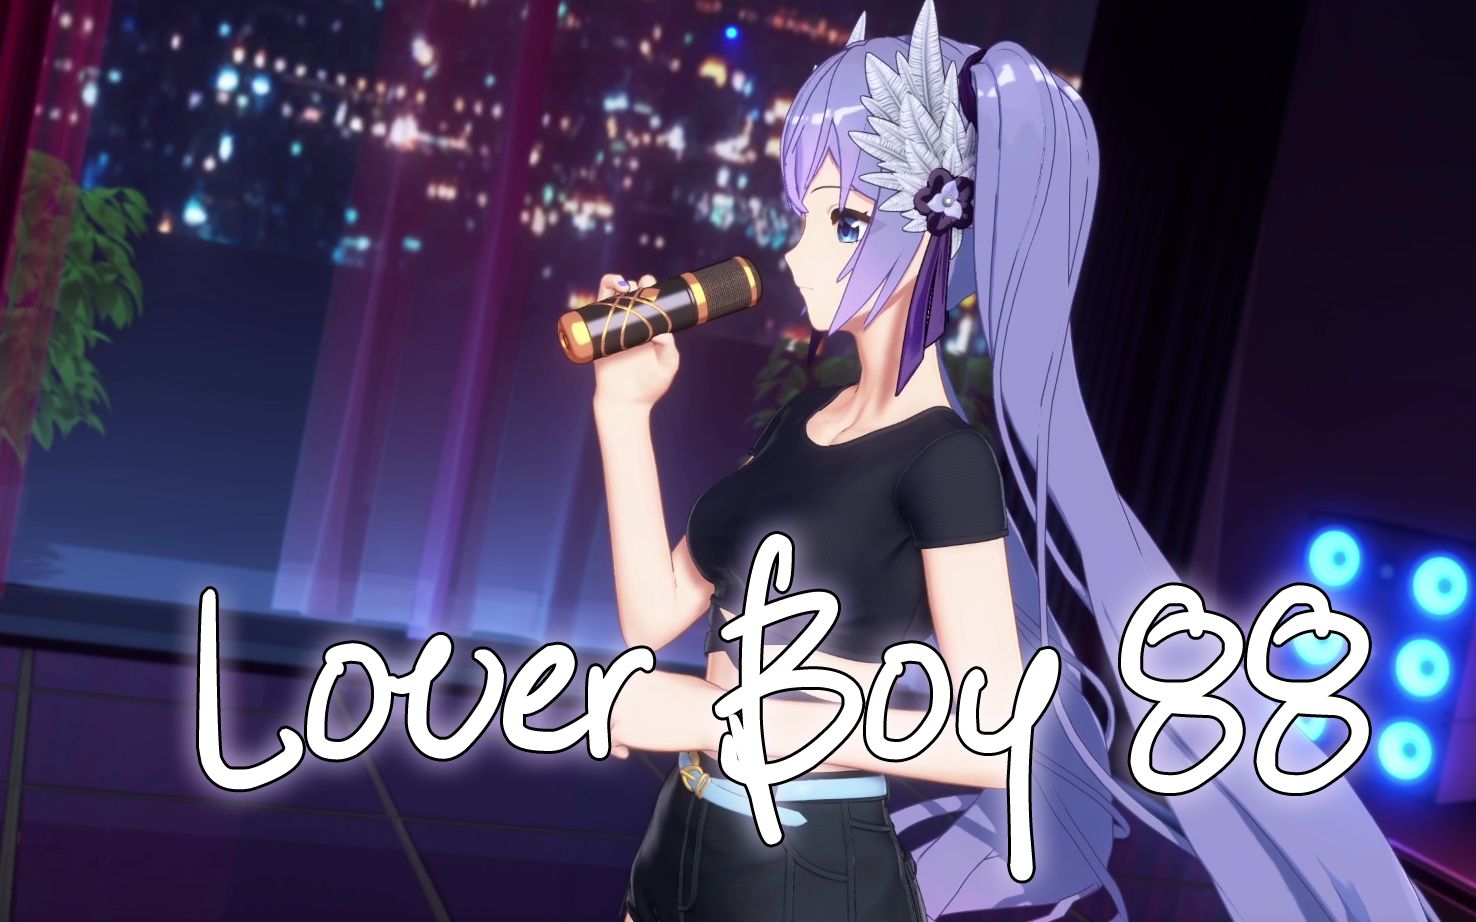 [图]【A-SOUL/向晚】《Lover Boy 88》【直播剪辑】